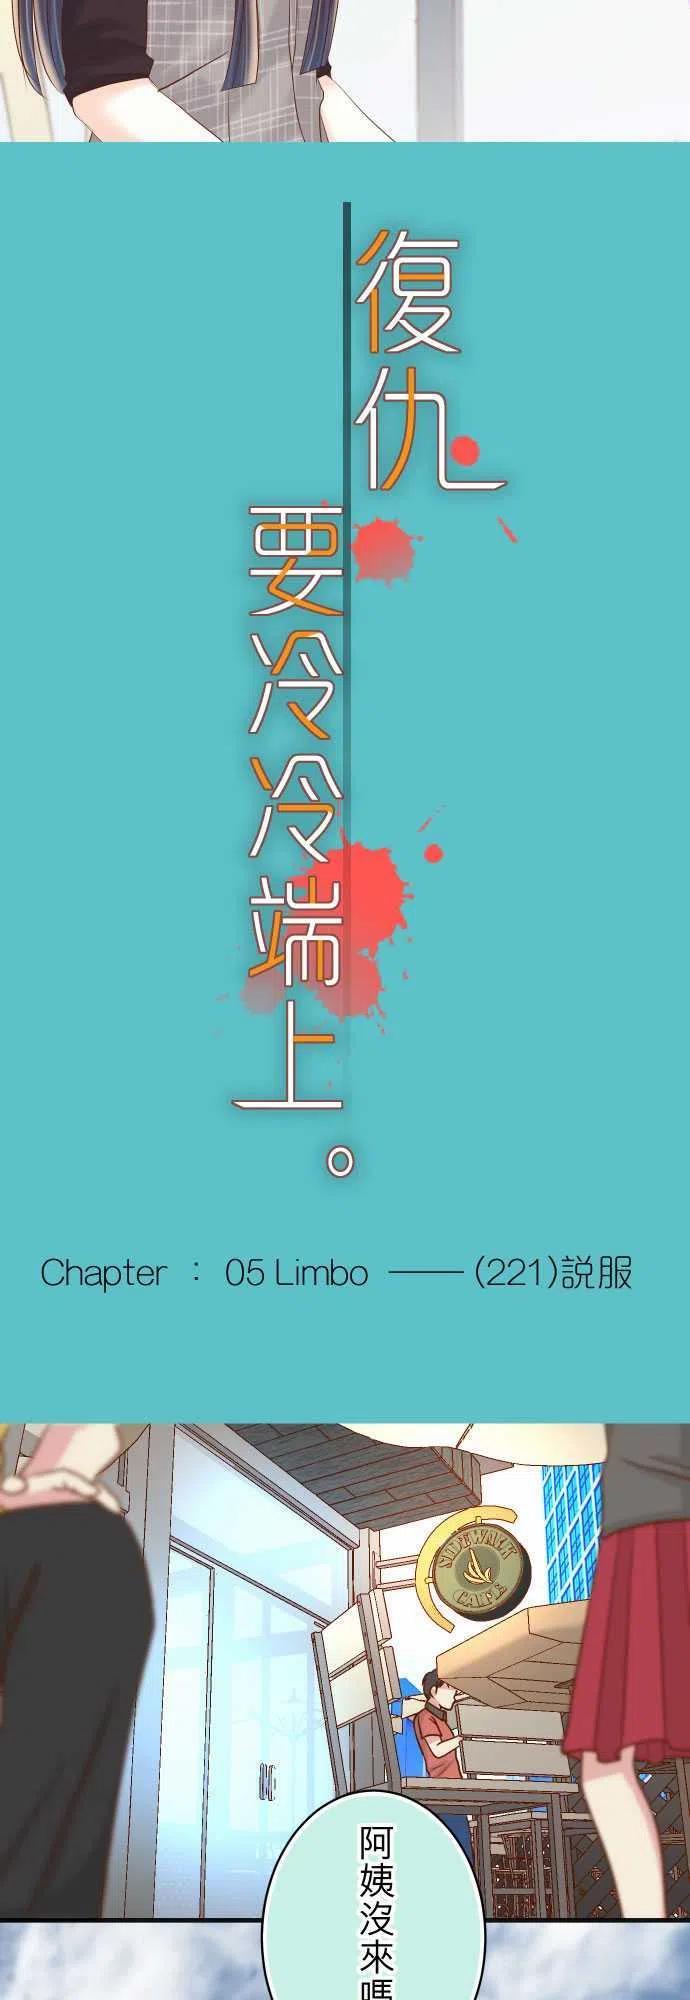 第五章 Limbo 221 说服3